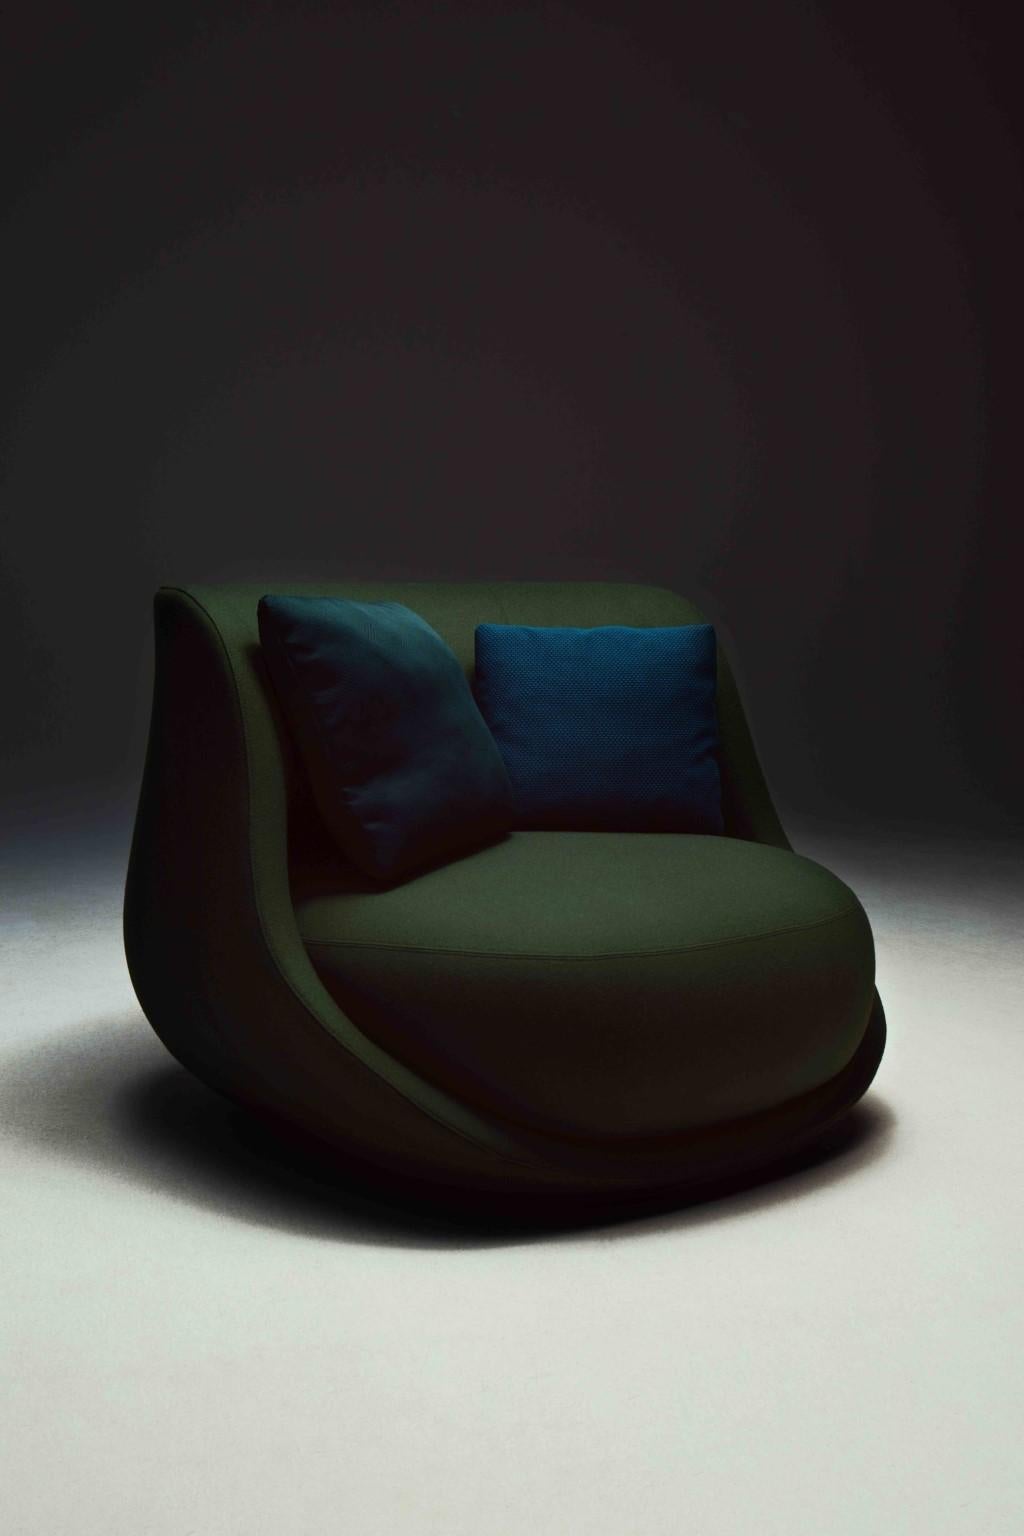 Canapé de Luca Nichetto 
Dimensions : L 175 x D 106 x H 77
MATERIAL : tissu 
Également disponible en cuir.
Les coussins ne sont pas inclus.

Liaison est l'histoire d'une coquille audacieuse, formée pour envelopper un doux cocon de sièges.